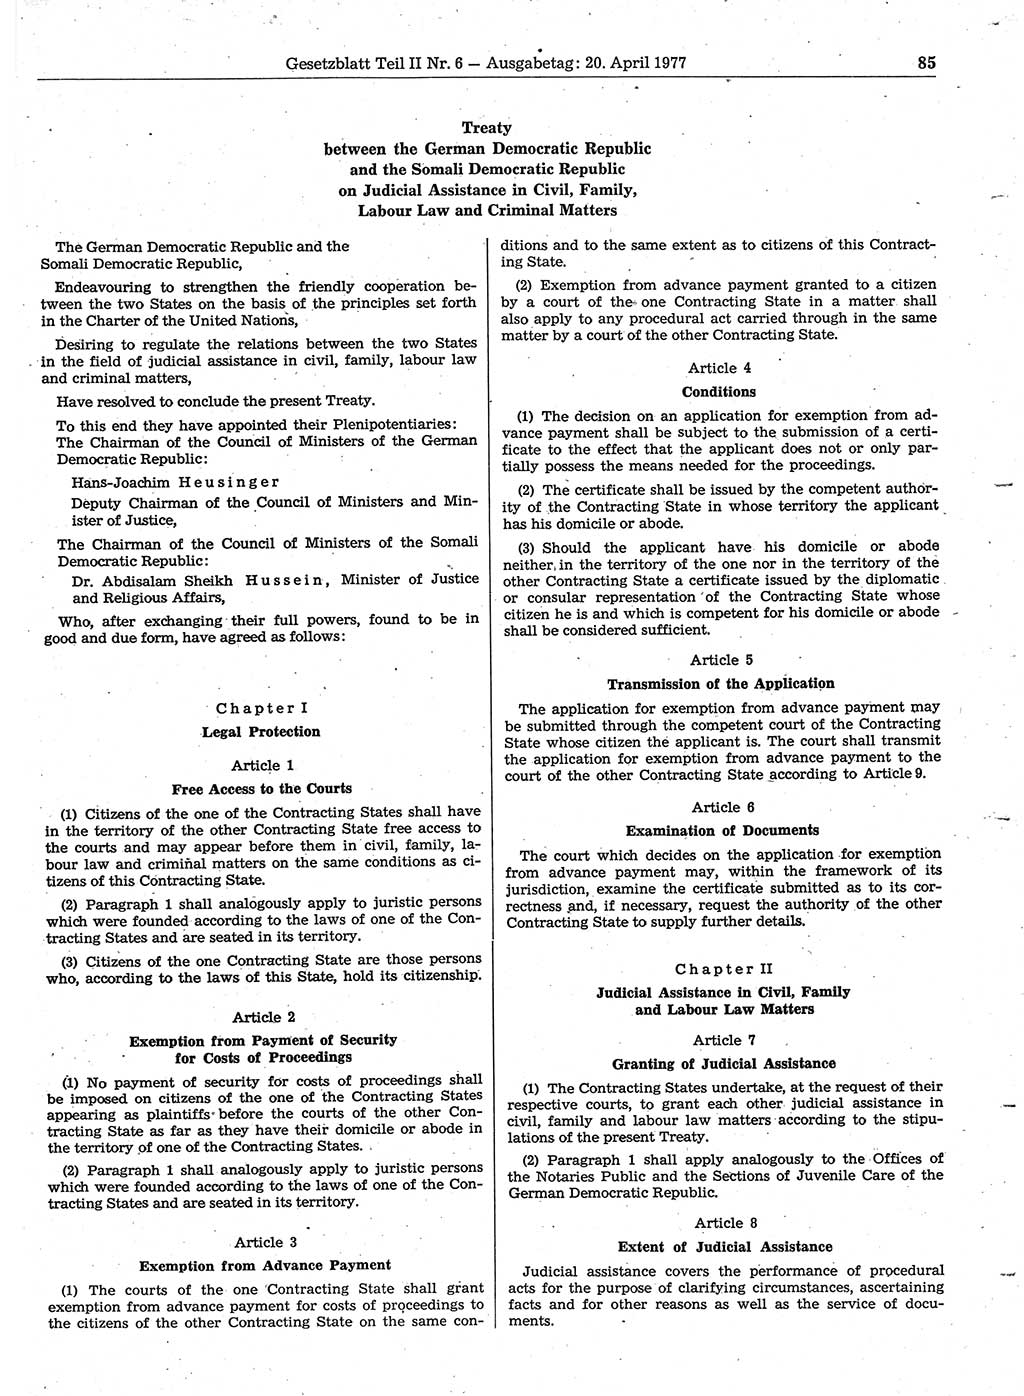 Gesetzblatt (GBl.) der Deutschen Demokratischen Republik (DDR) Teil ⅠⅠ 1977, Seite 85 (GBl. DDR ⅠⅠ 1977, S. 85)